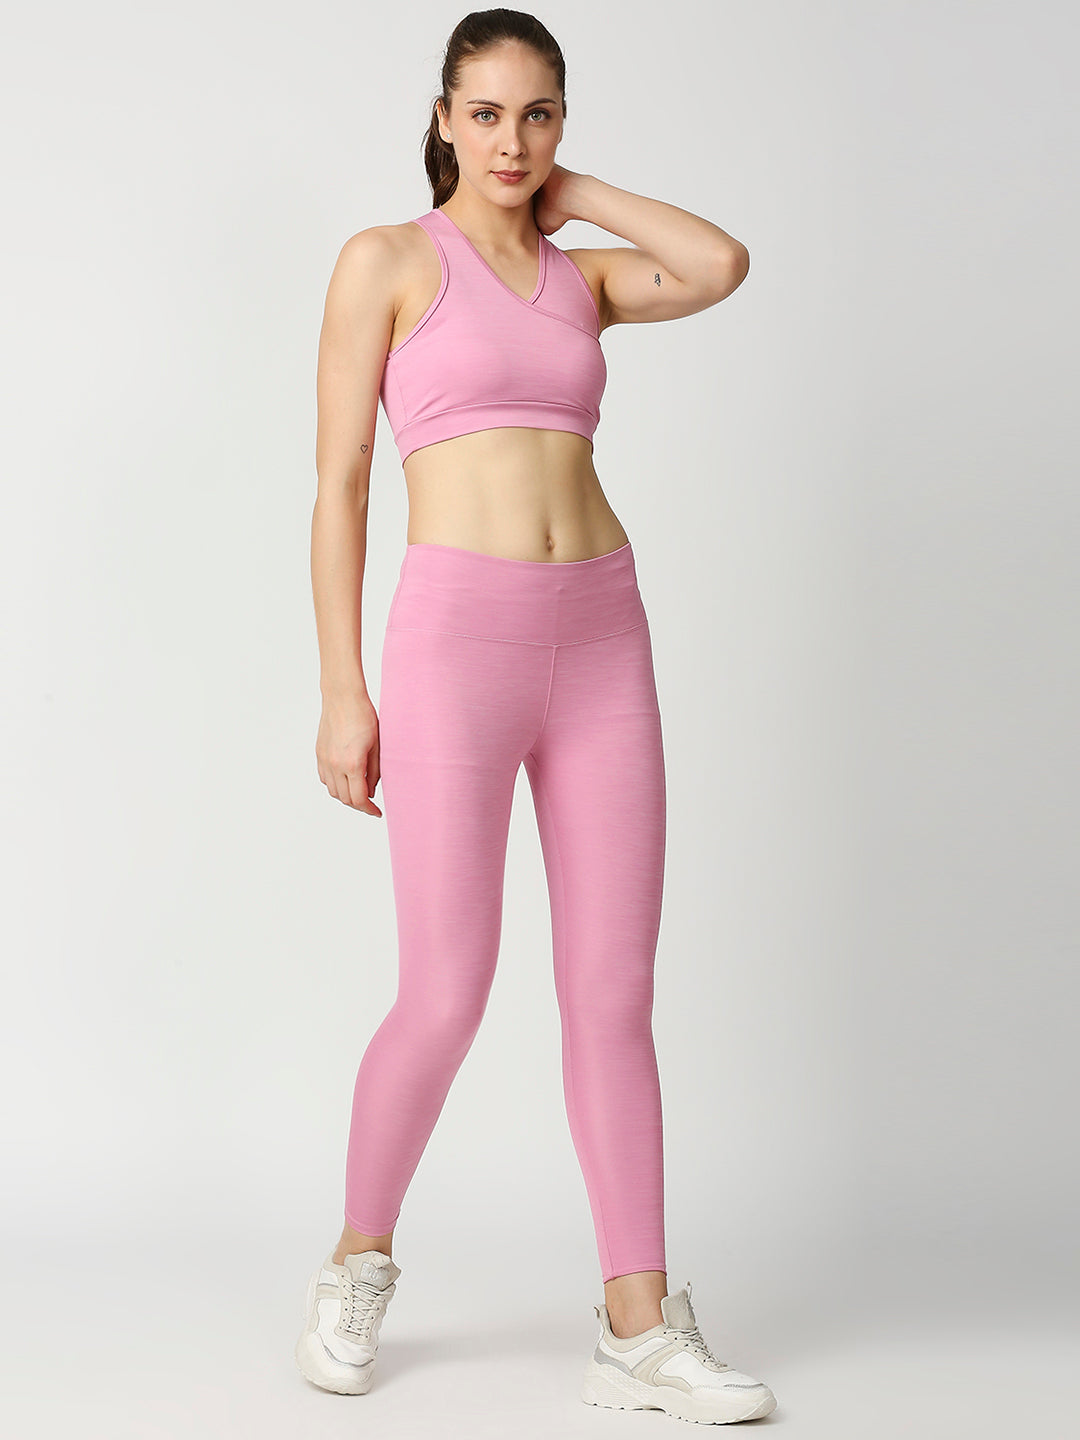 Buy Blamblack Women's Light Pink Color V-Neck GYM Wear Co-Ord's Set